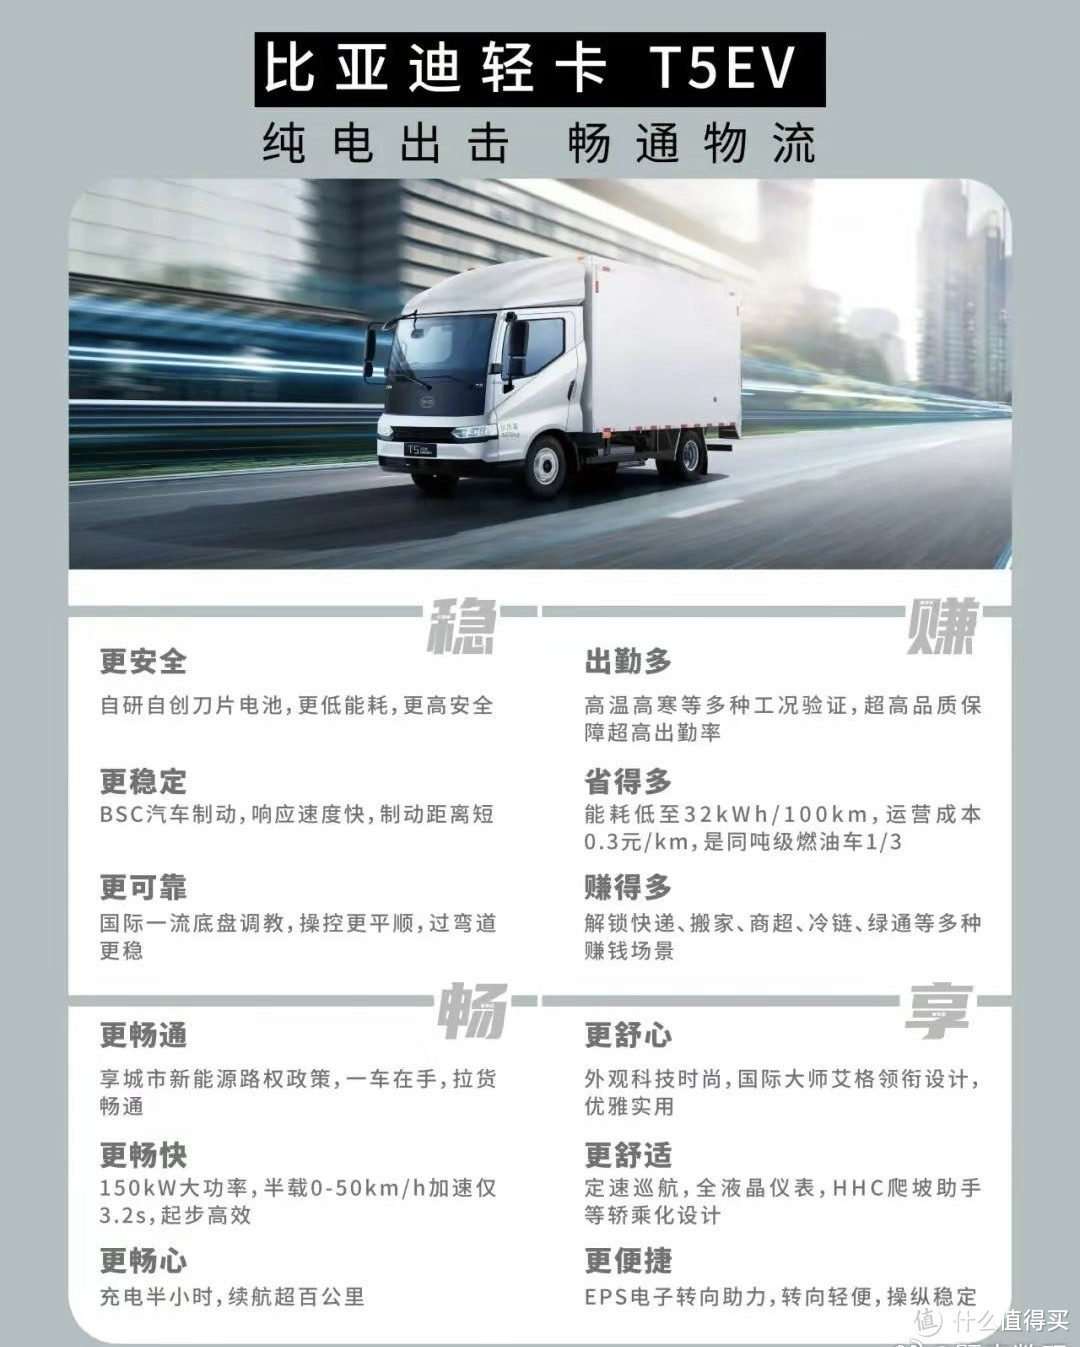 比亚迪全新轻卡车型T5系列正式上市